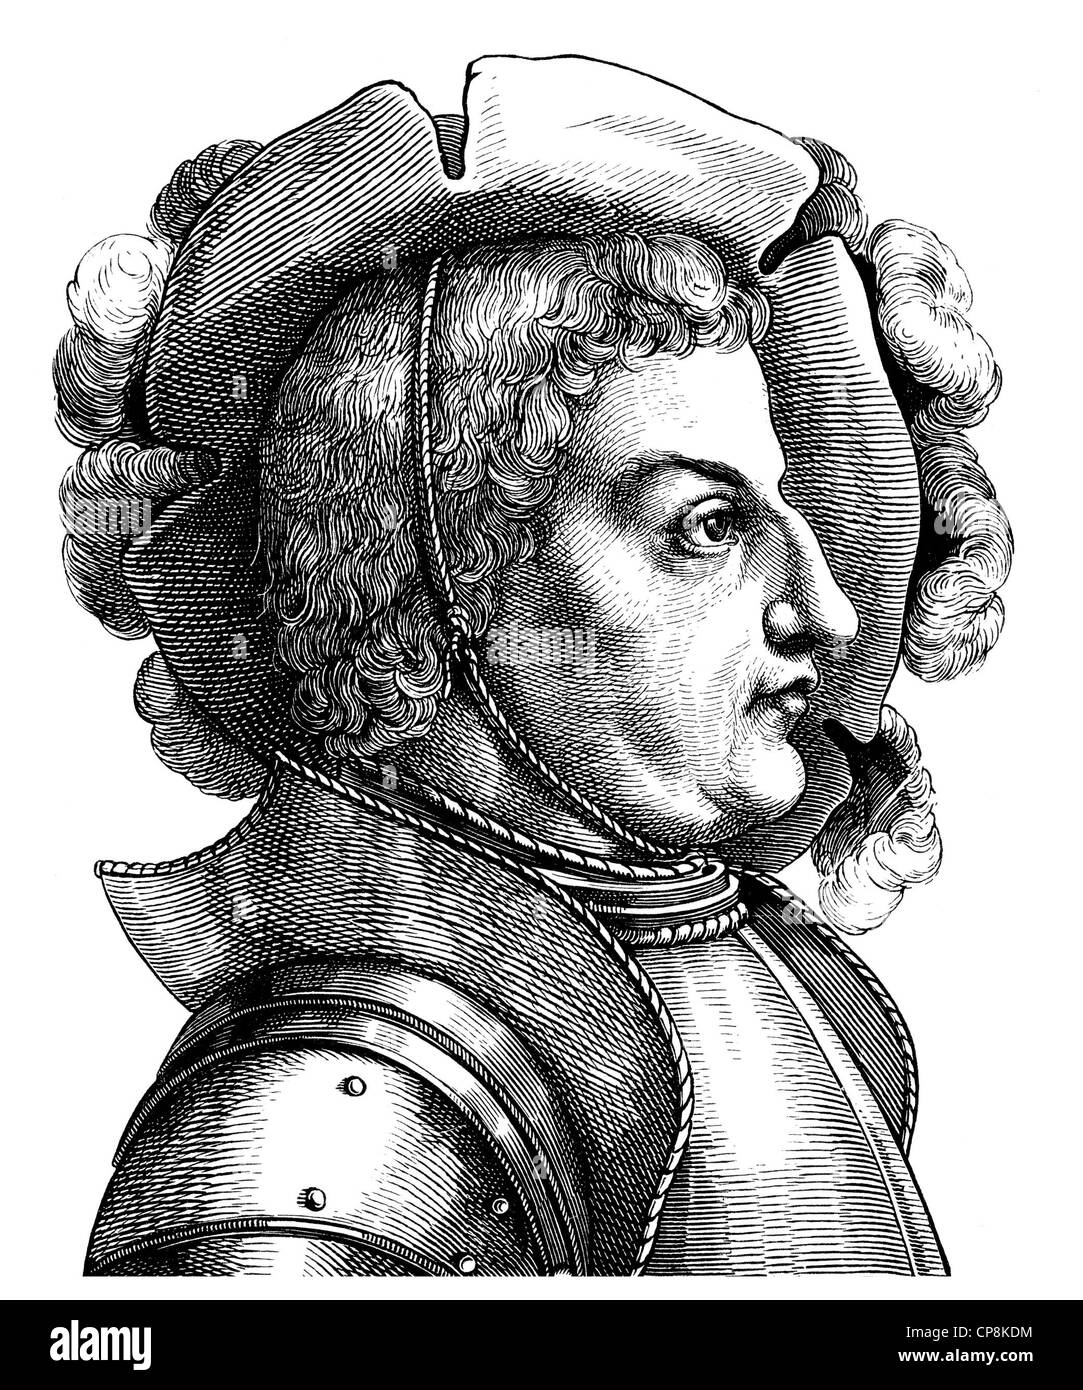 Franz von Sickingen, 1481 - 1523, leader of the Rhenish and Swabian knights, Historische Zeichnung aus dem 19. Jahrhundert, Port Stock Photo